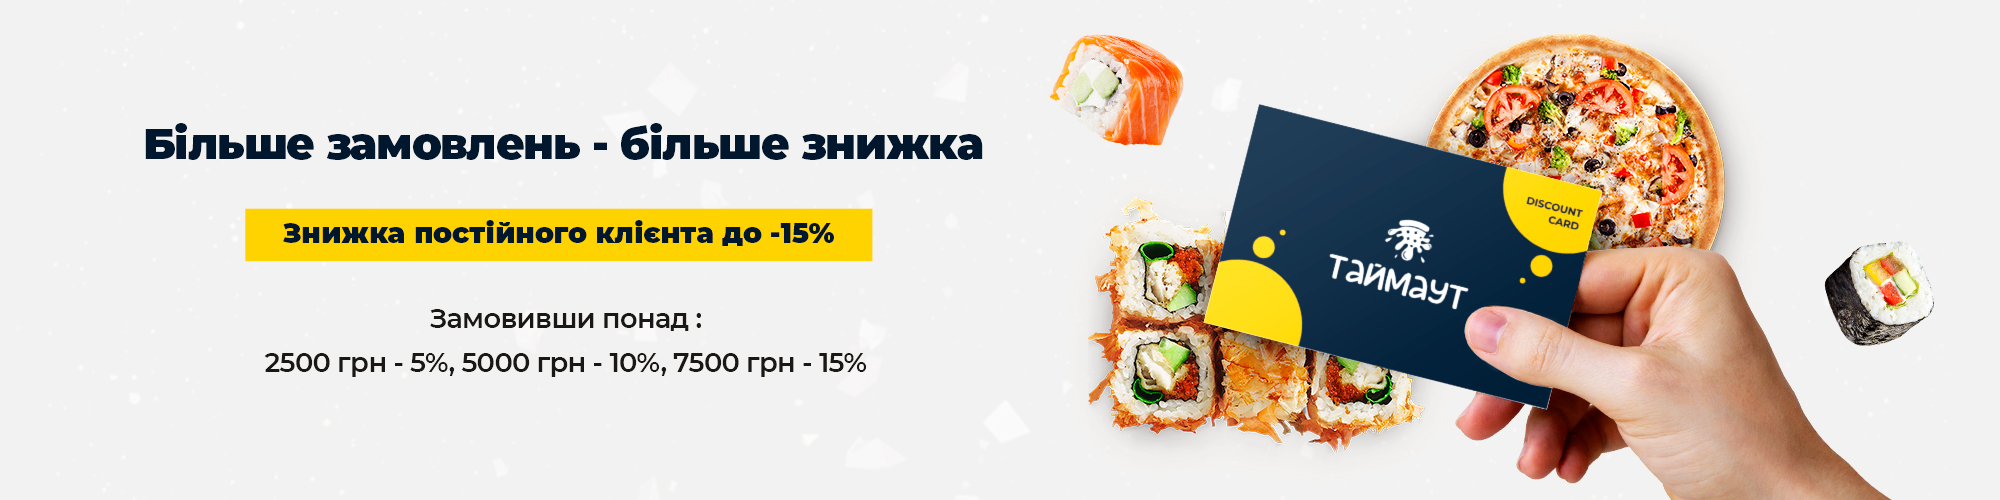 Стоимость суши в Одессе